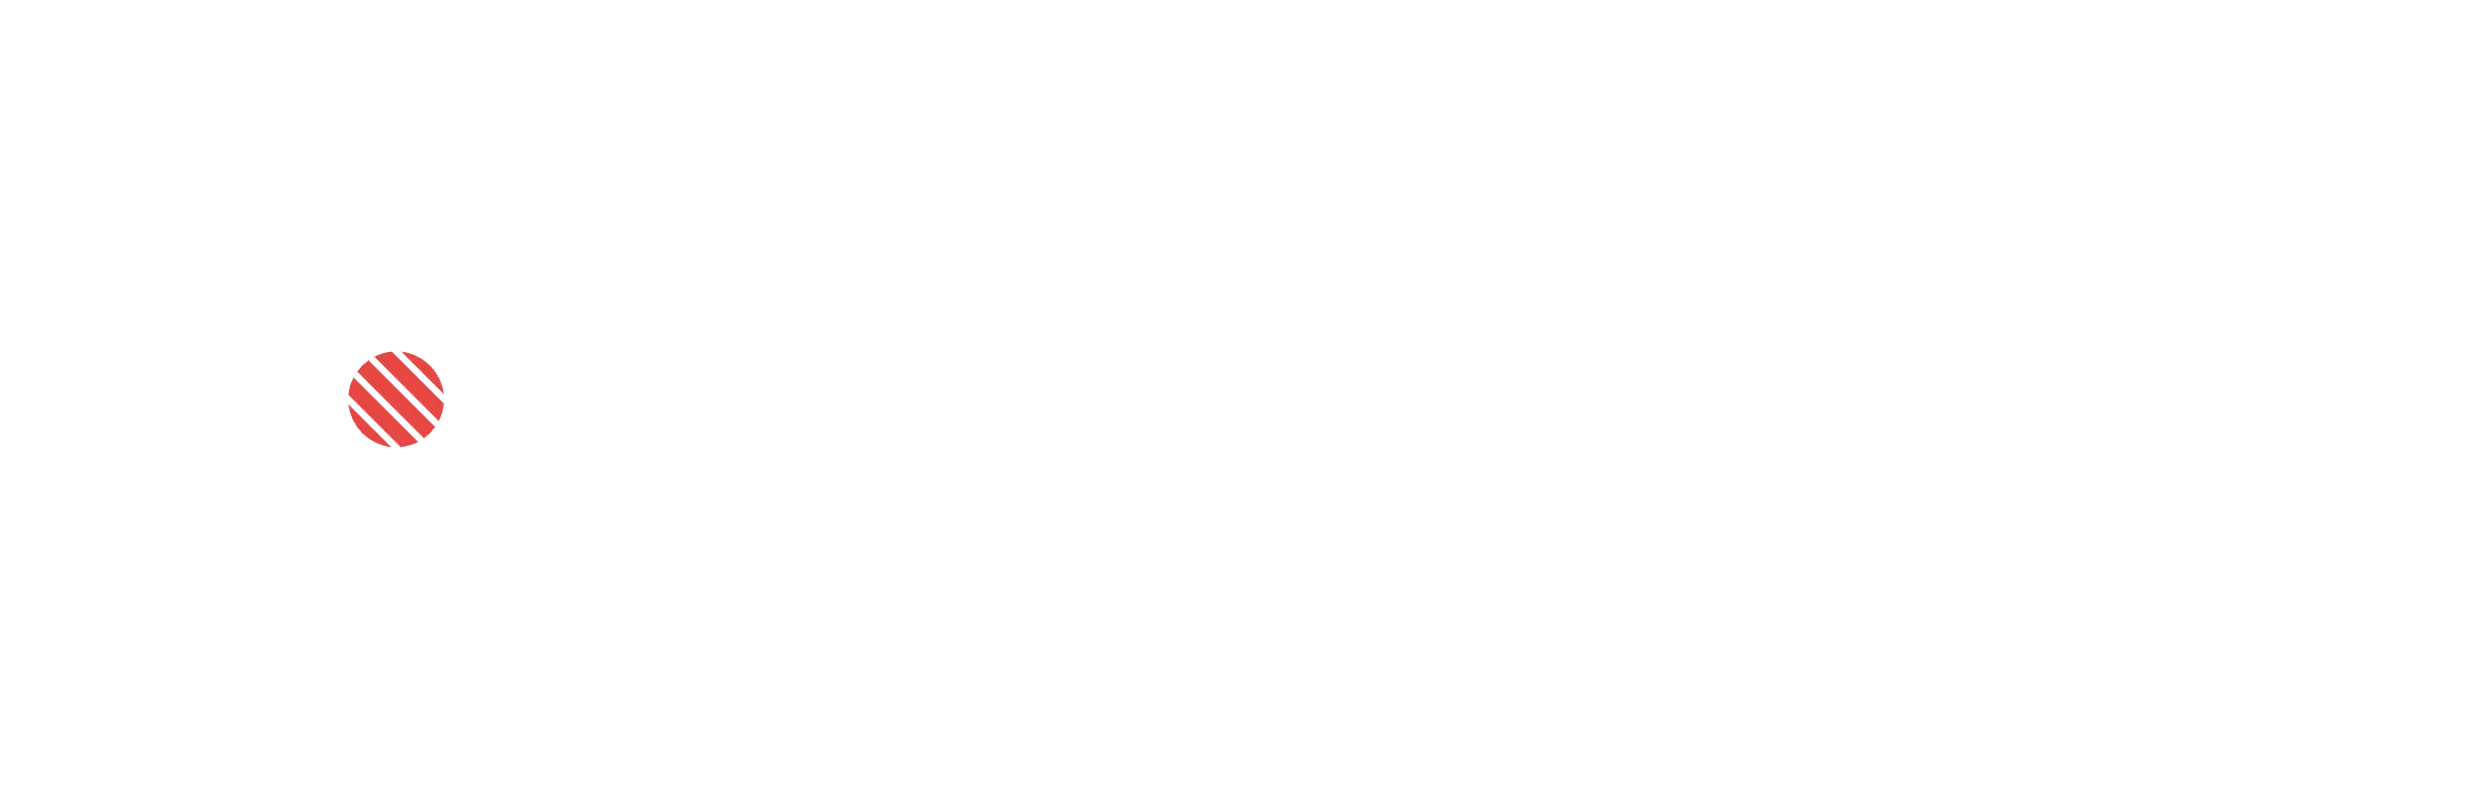 Sushi Mania Codes promotionnels 